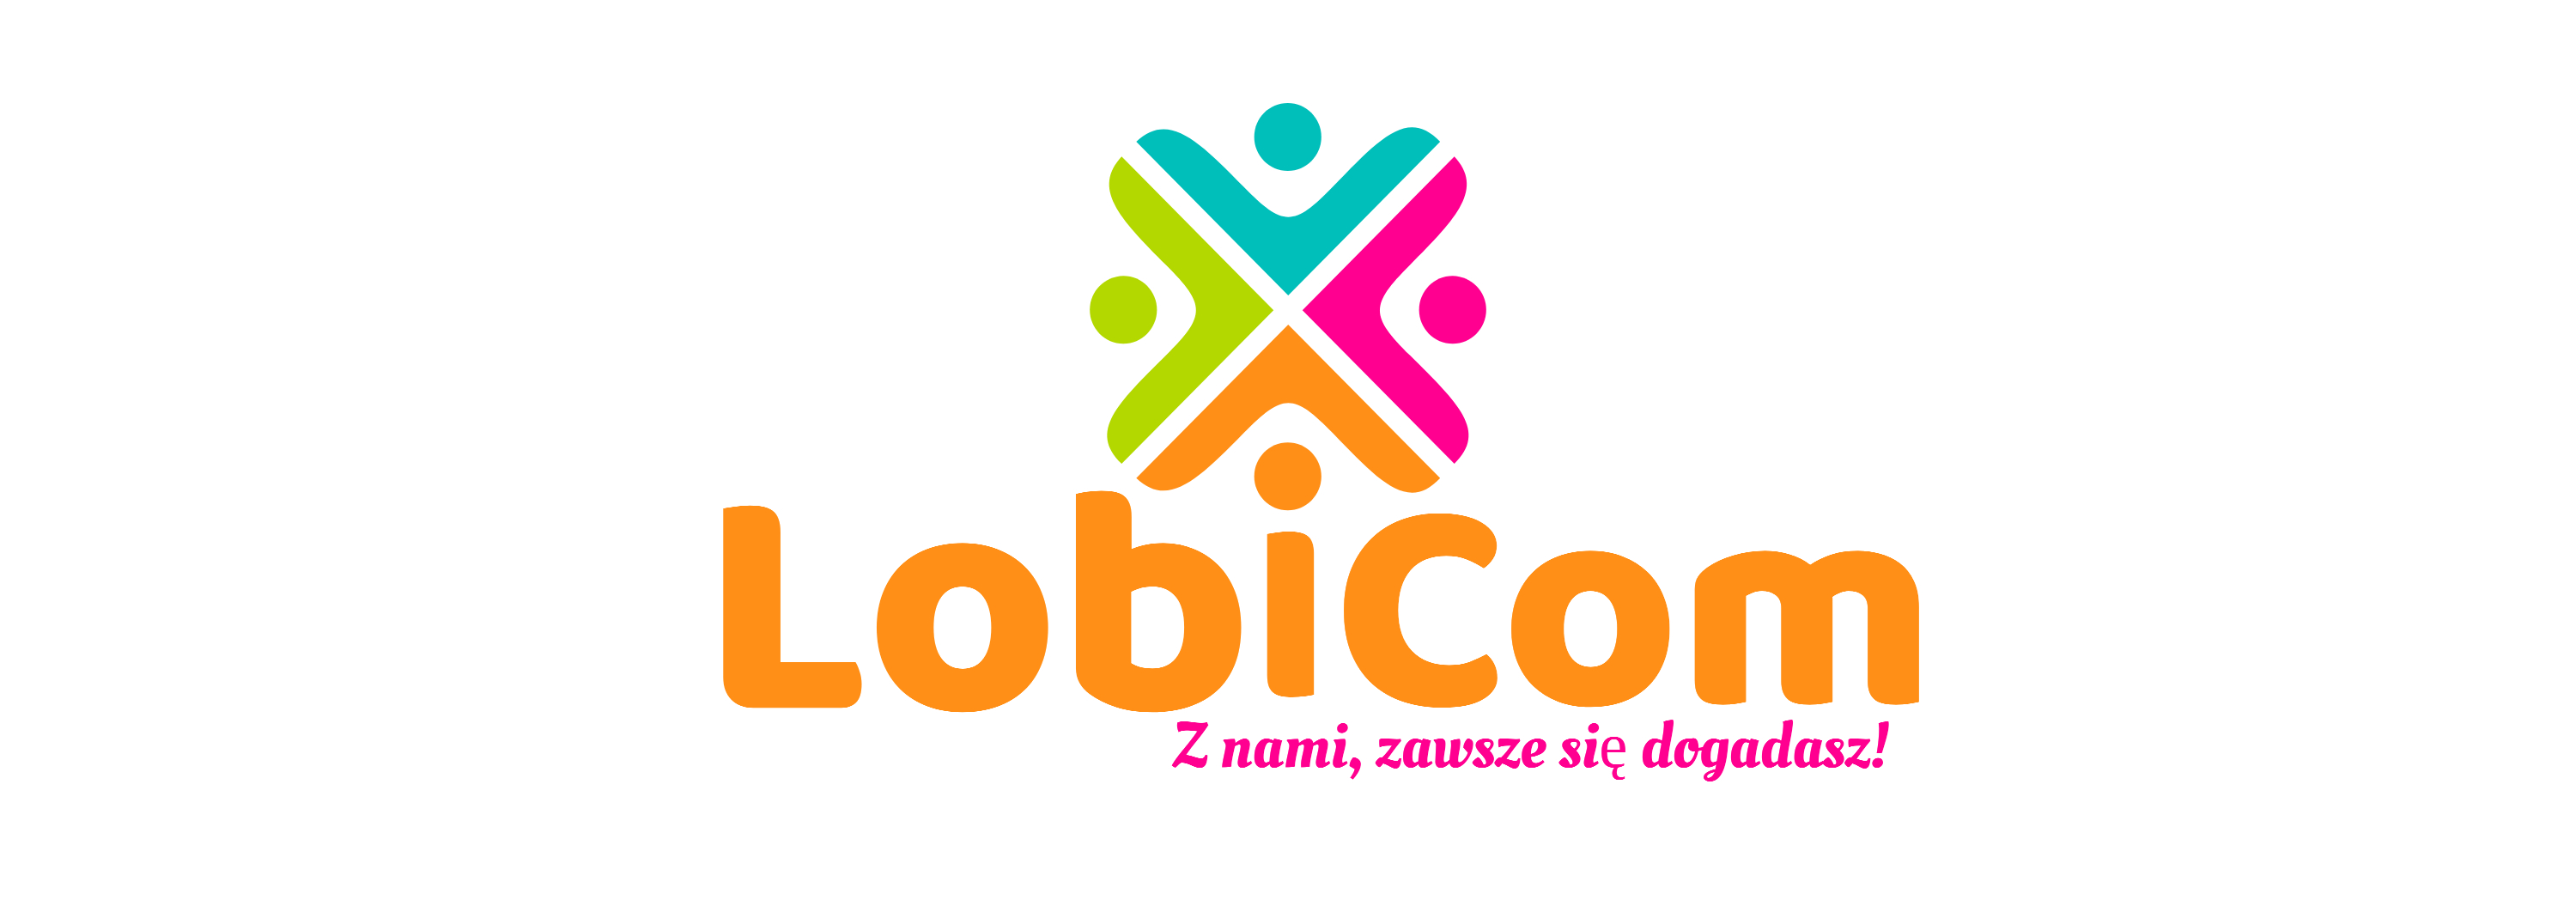 Lobicom.pl